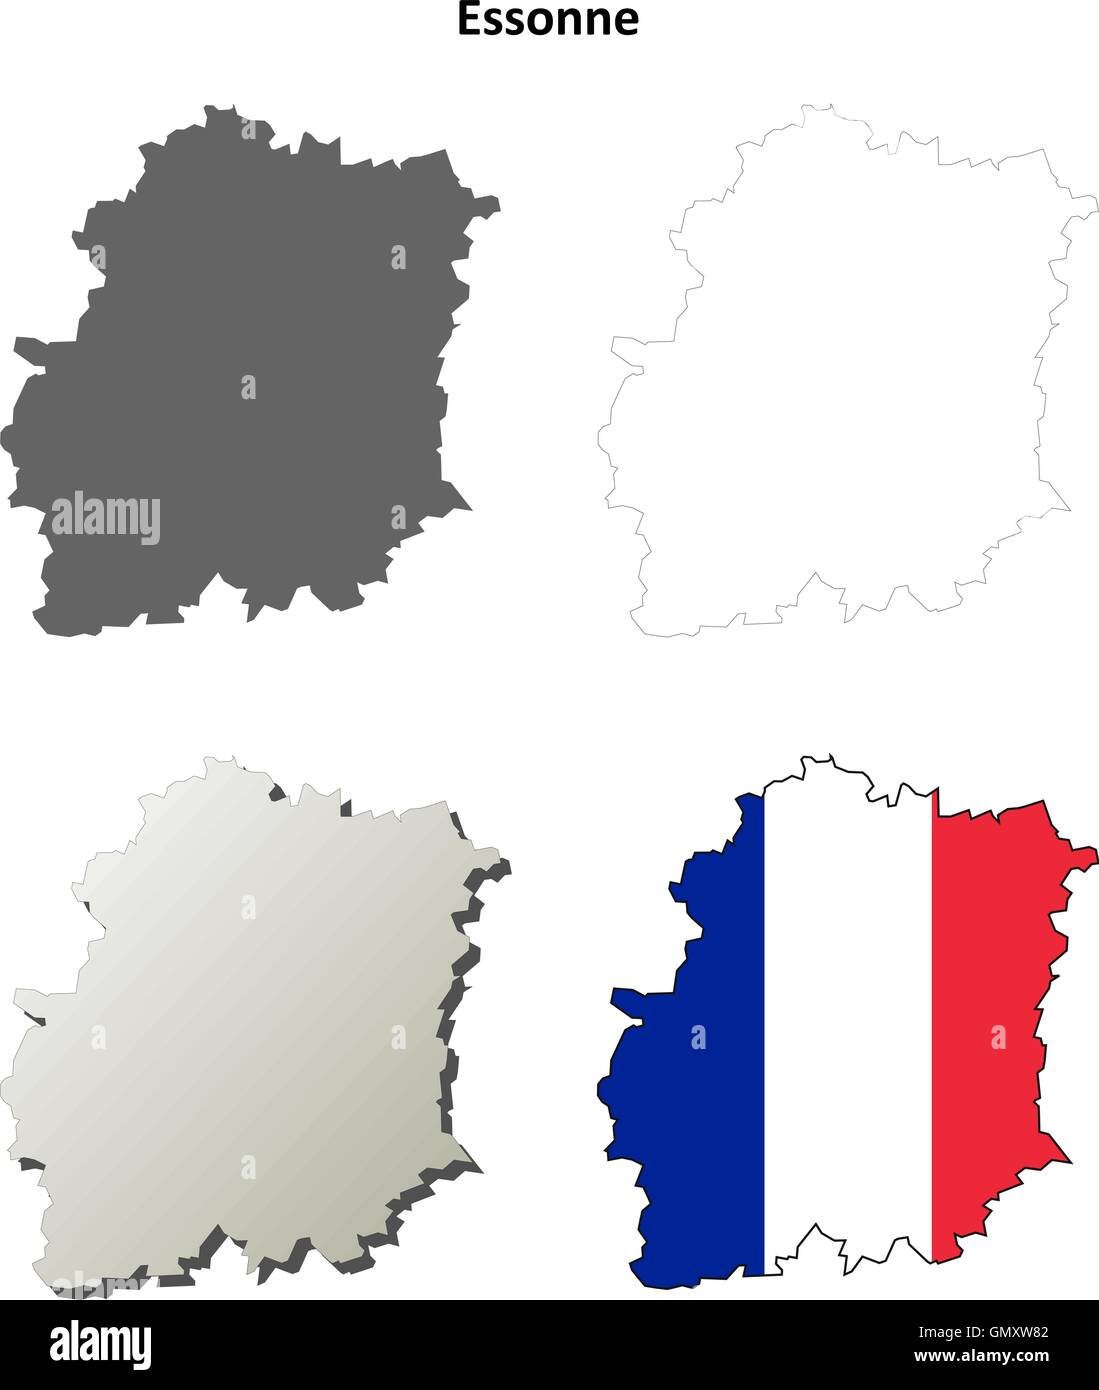 Essonne, Ile-de-France Description de l'ensemble de cartes Illustration de Vecteur